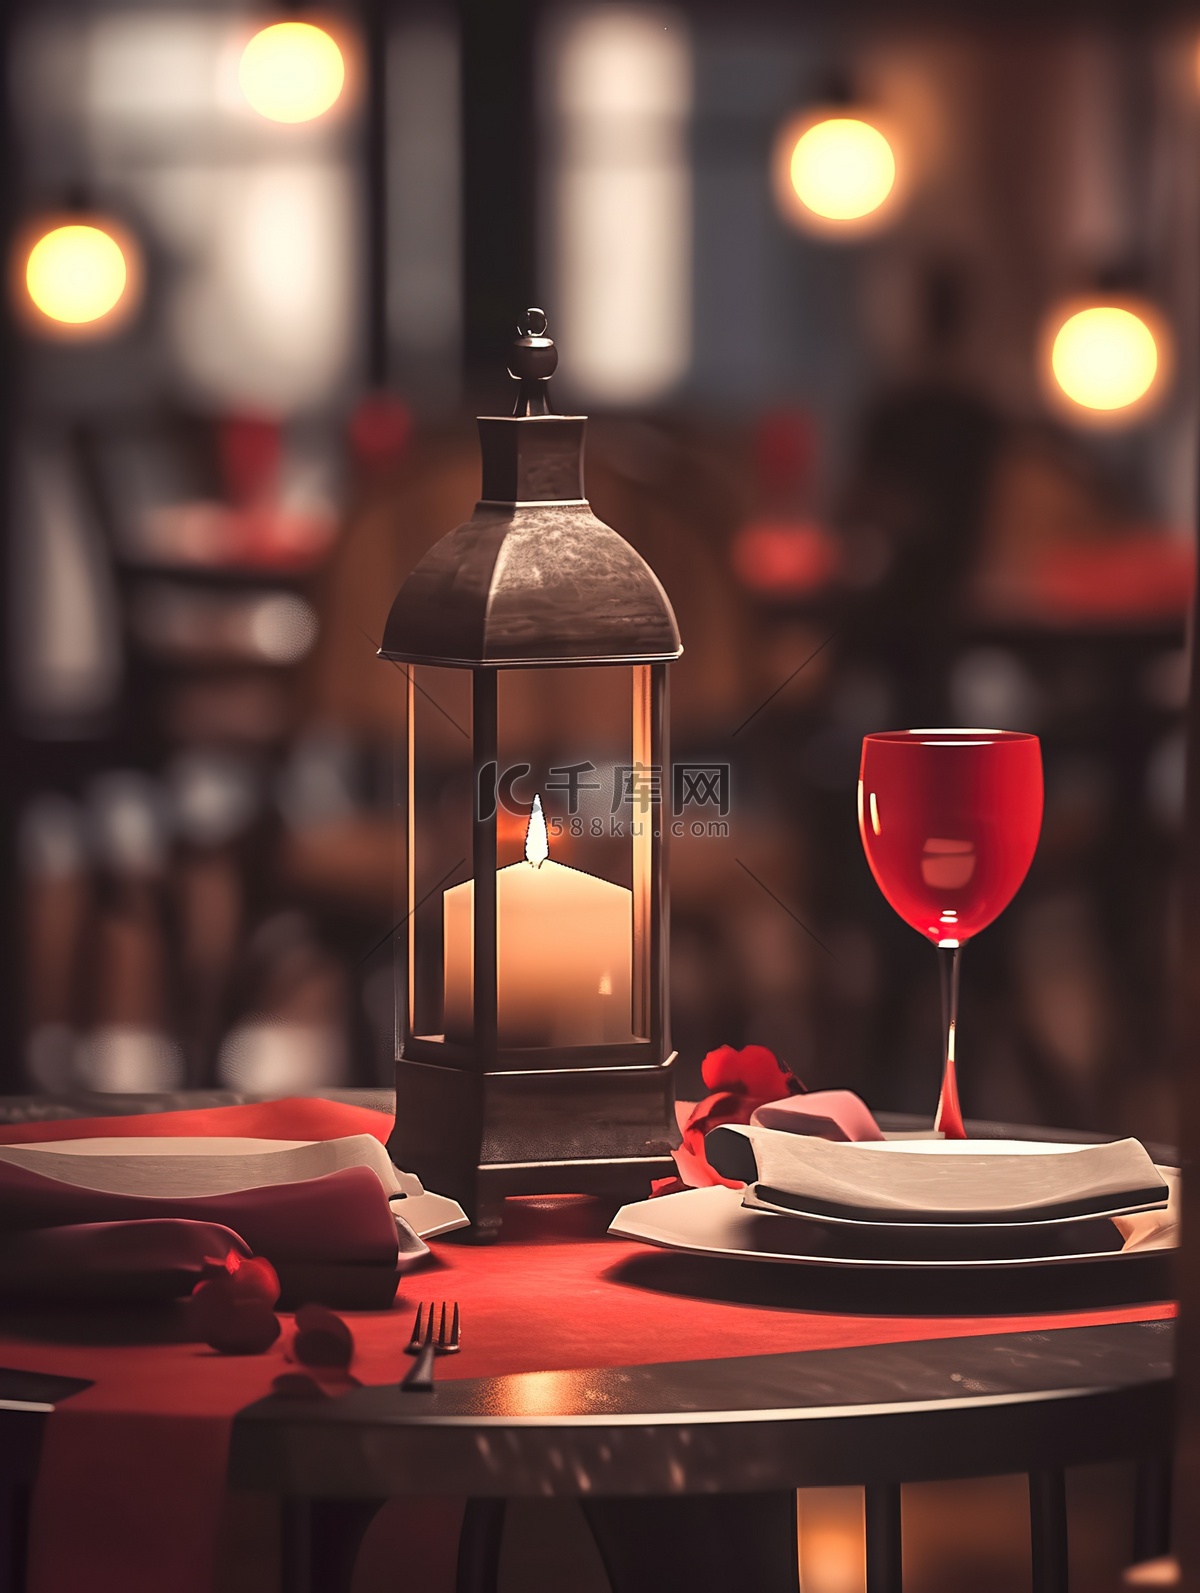 浪漫的情人节晚餐红酒和烛光11插画图片-千库网